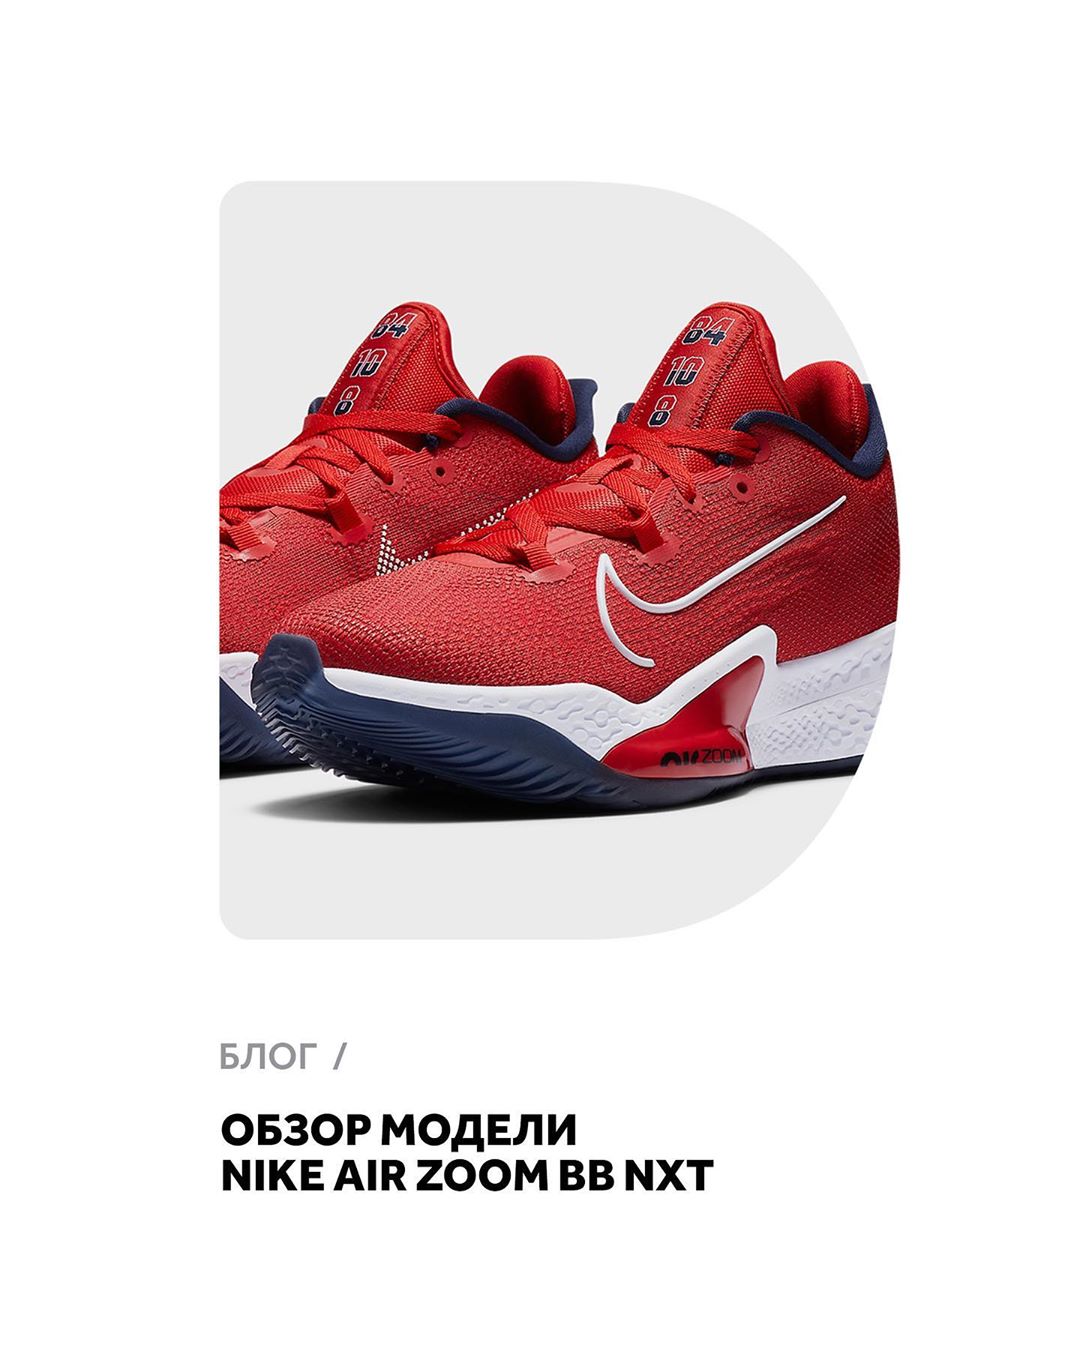 𝐅𝐔𝐍𝐊𝐘 𝐃𝐔𝐍𝐊𝐘 - Обзор модели Nike Air Zoom BB NXT. Читайте новую статью в нашем блоге. Ссылка в Stories.
⠀
Кроссовки уже доступны в Funky Dunky.
⠀
#funkydunky #airzoombbnxt